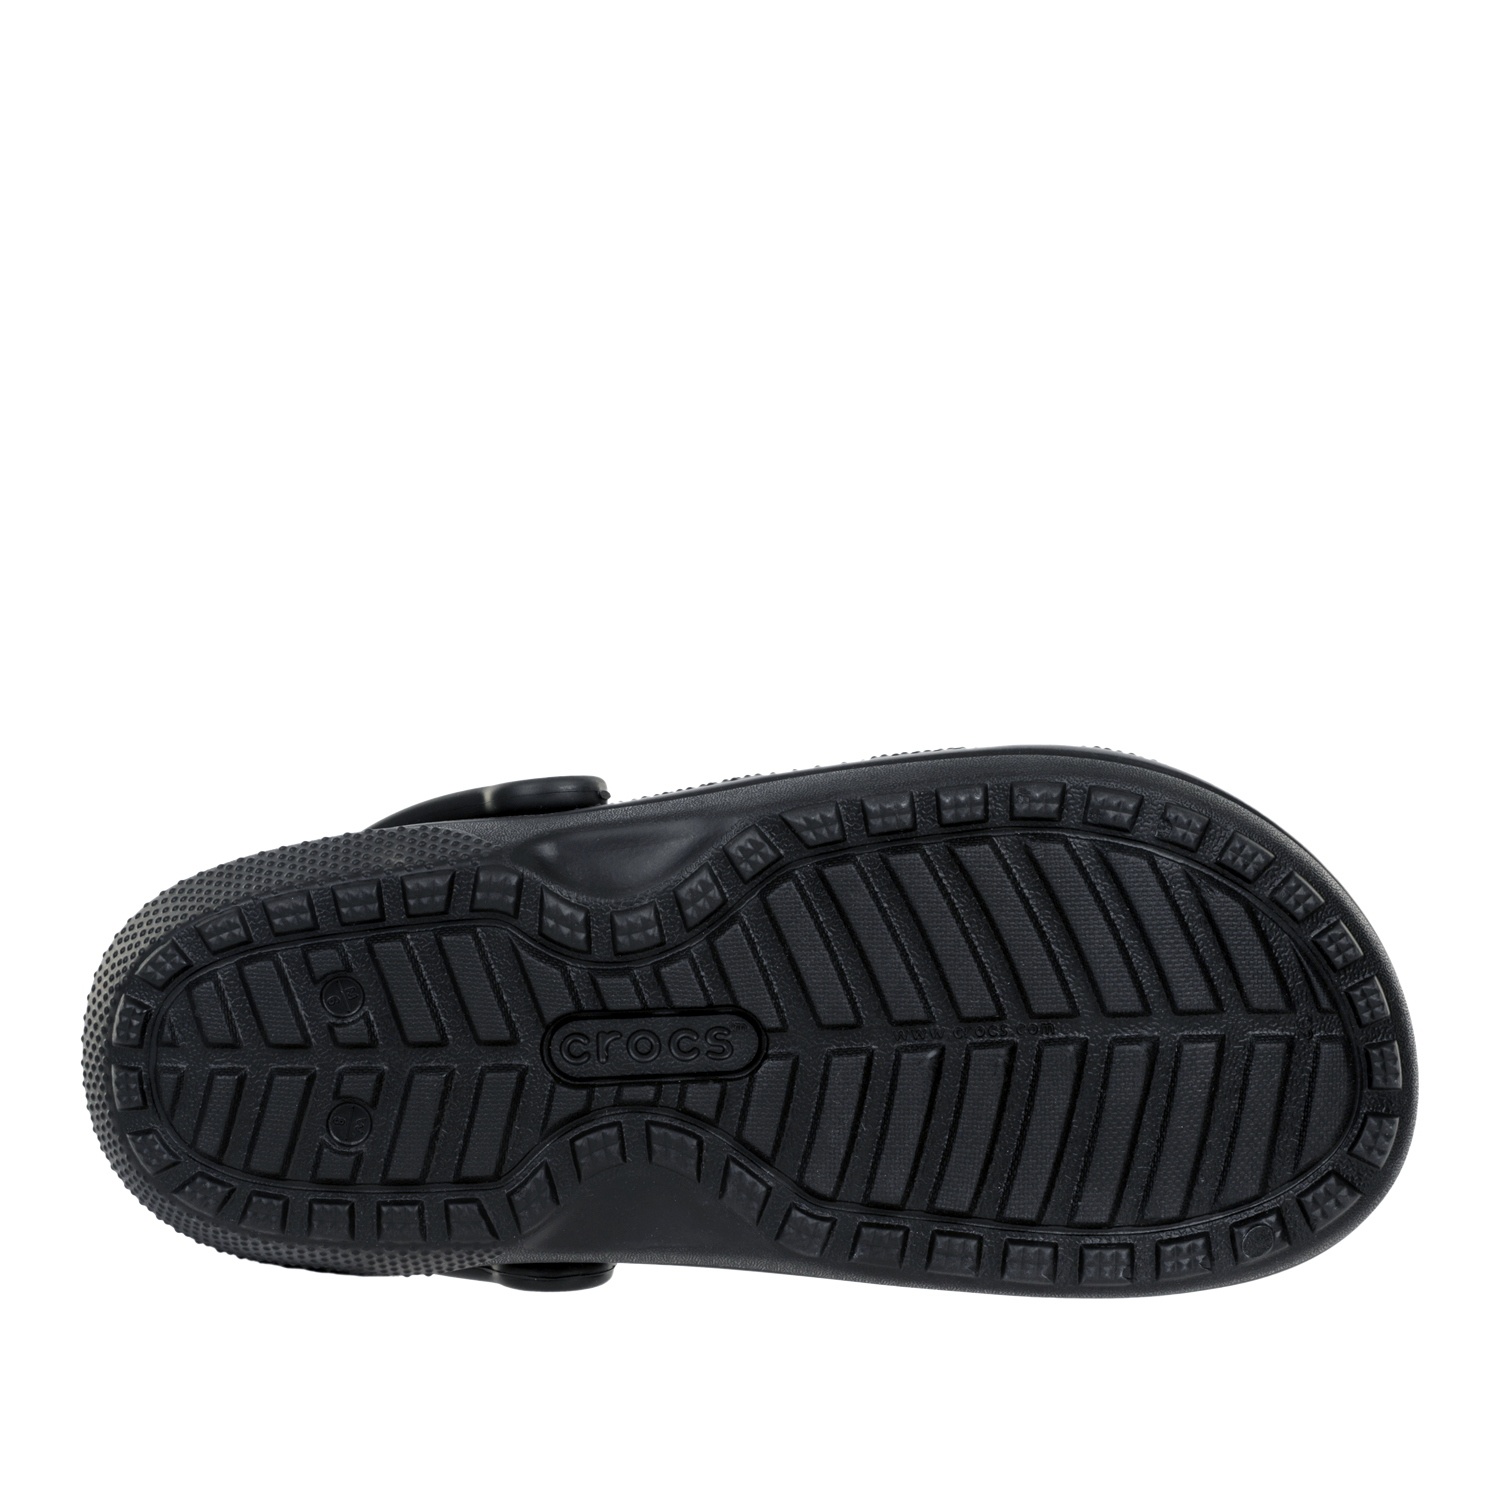 Сандалии Crocs Classic Lined Clog Black/Black